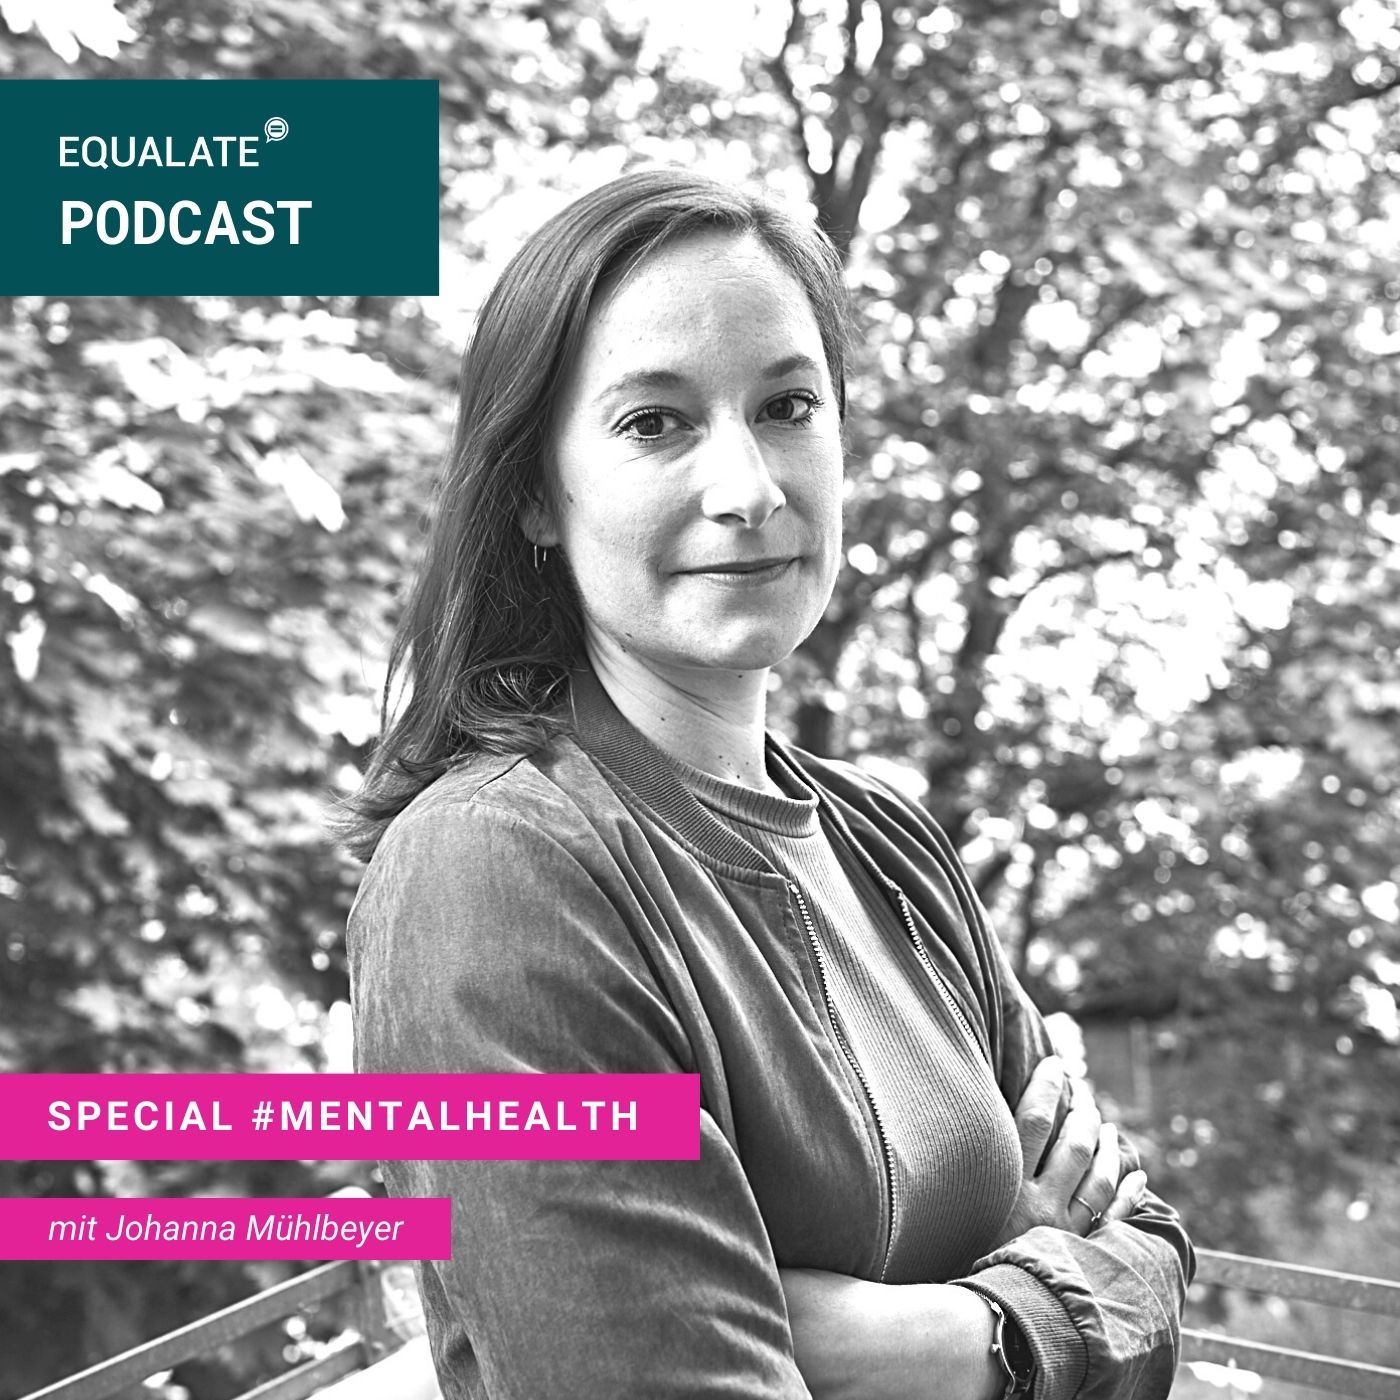 SUMMER-BREAK SPECIAL: Mental Health - im Interview mit mir selbst #mentalhealth